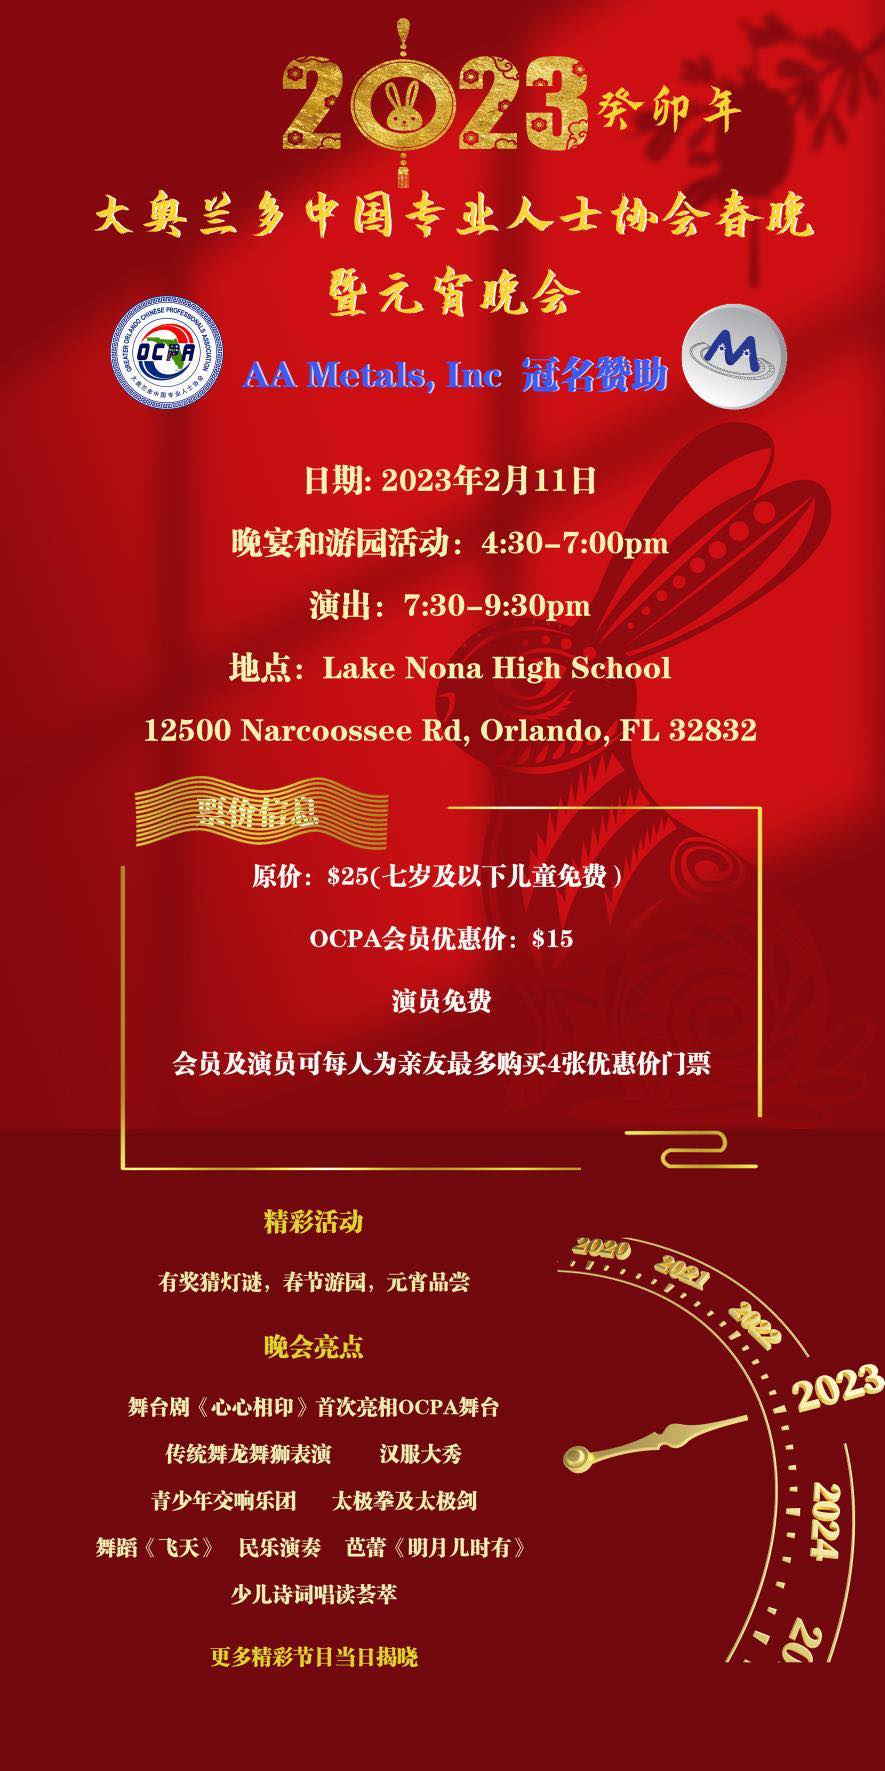 OCPA Chinese New Year Gala